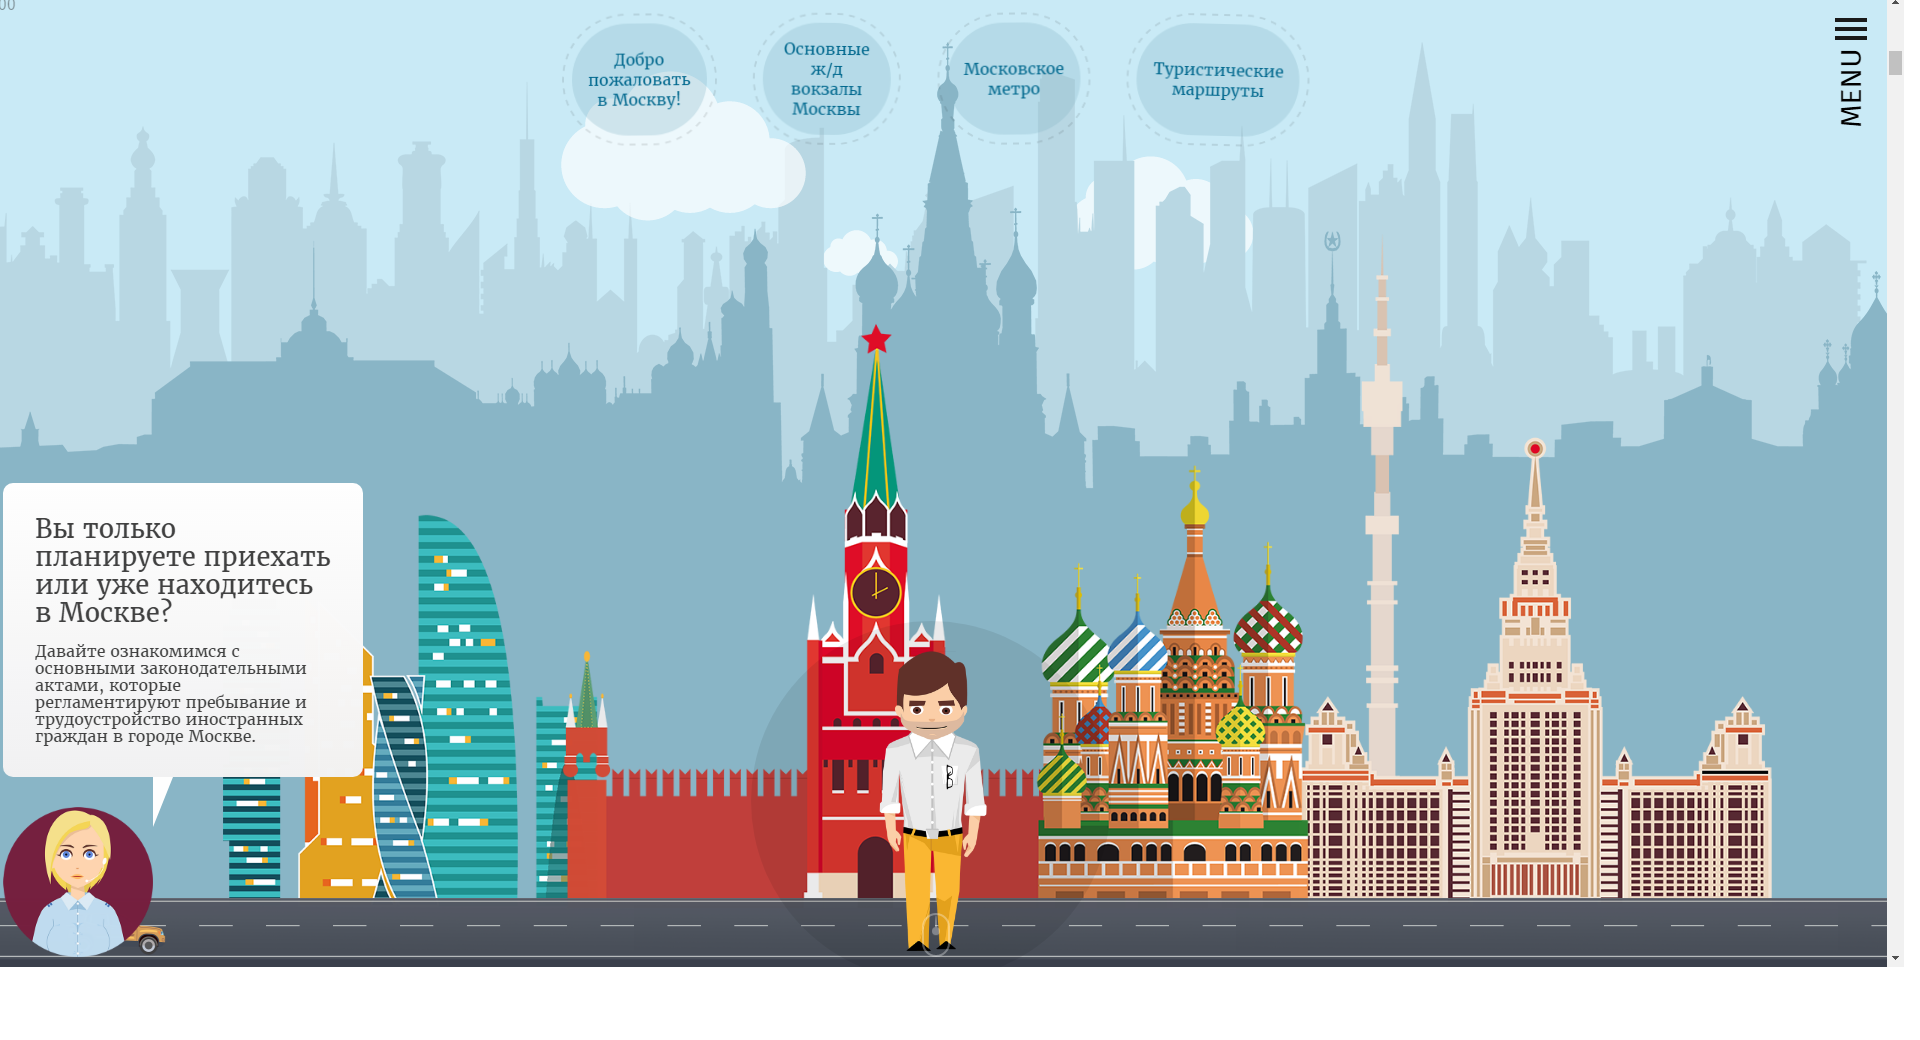 Мигранты смогут пройти онлайн-квест на знание Москвы